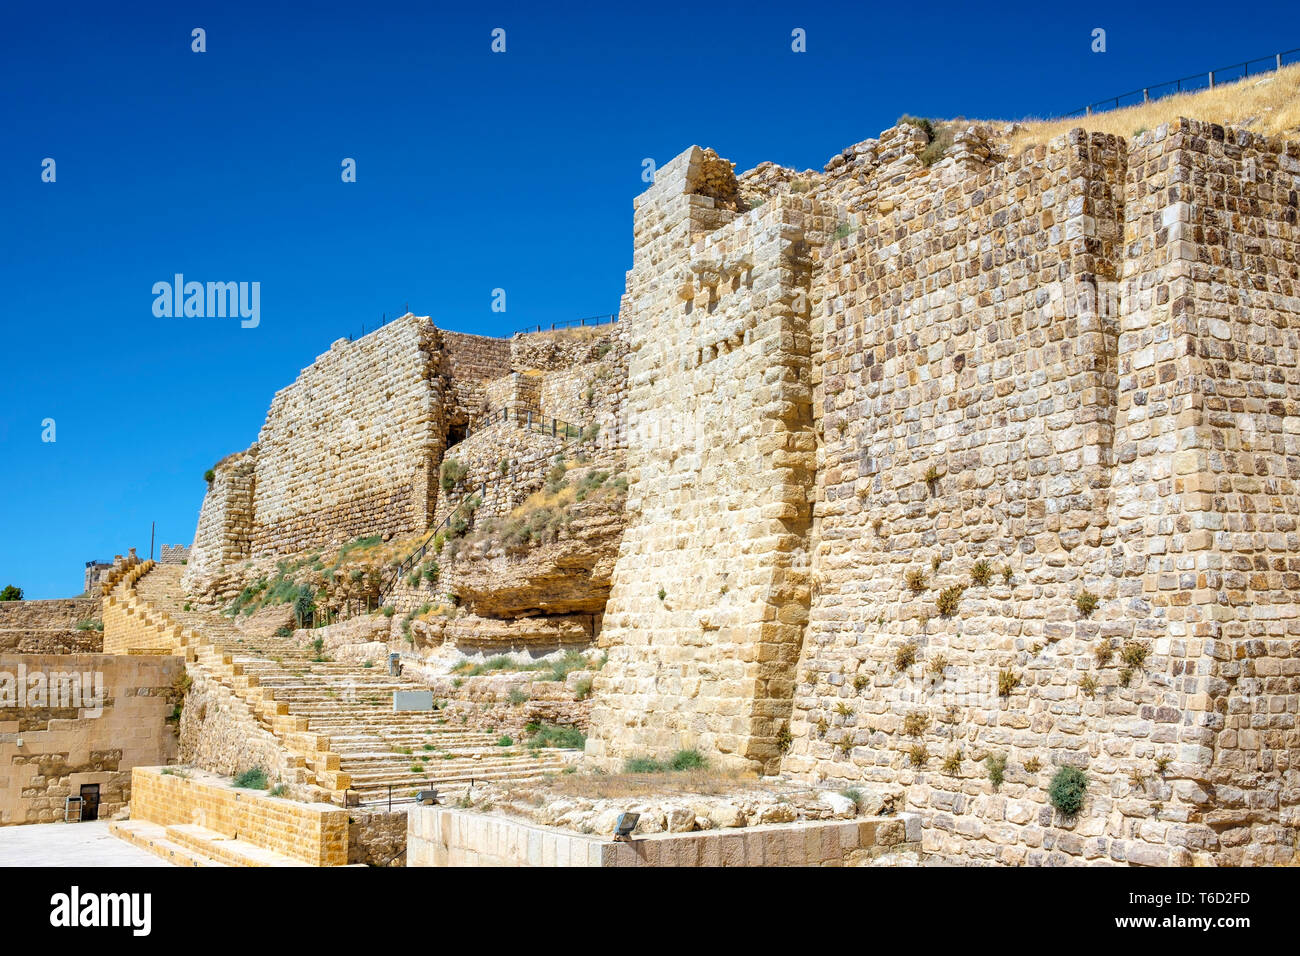 Jordanien, Karak Governatorat, Al-Karak. Kerak Castle, 12. Jahrhundert Crusader Castle, eine der größten Burgen der Kreuzritter in der Levante. Stockfoto